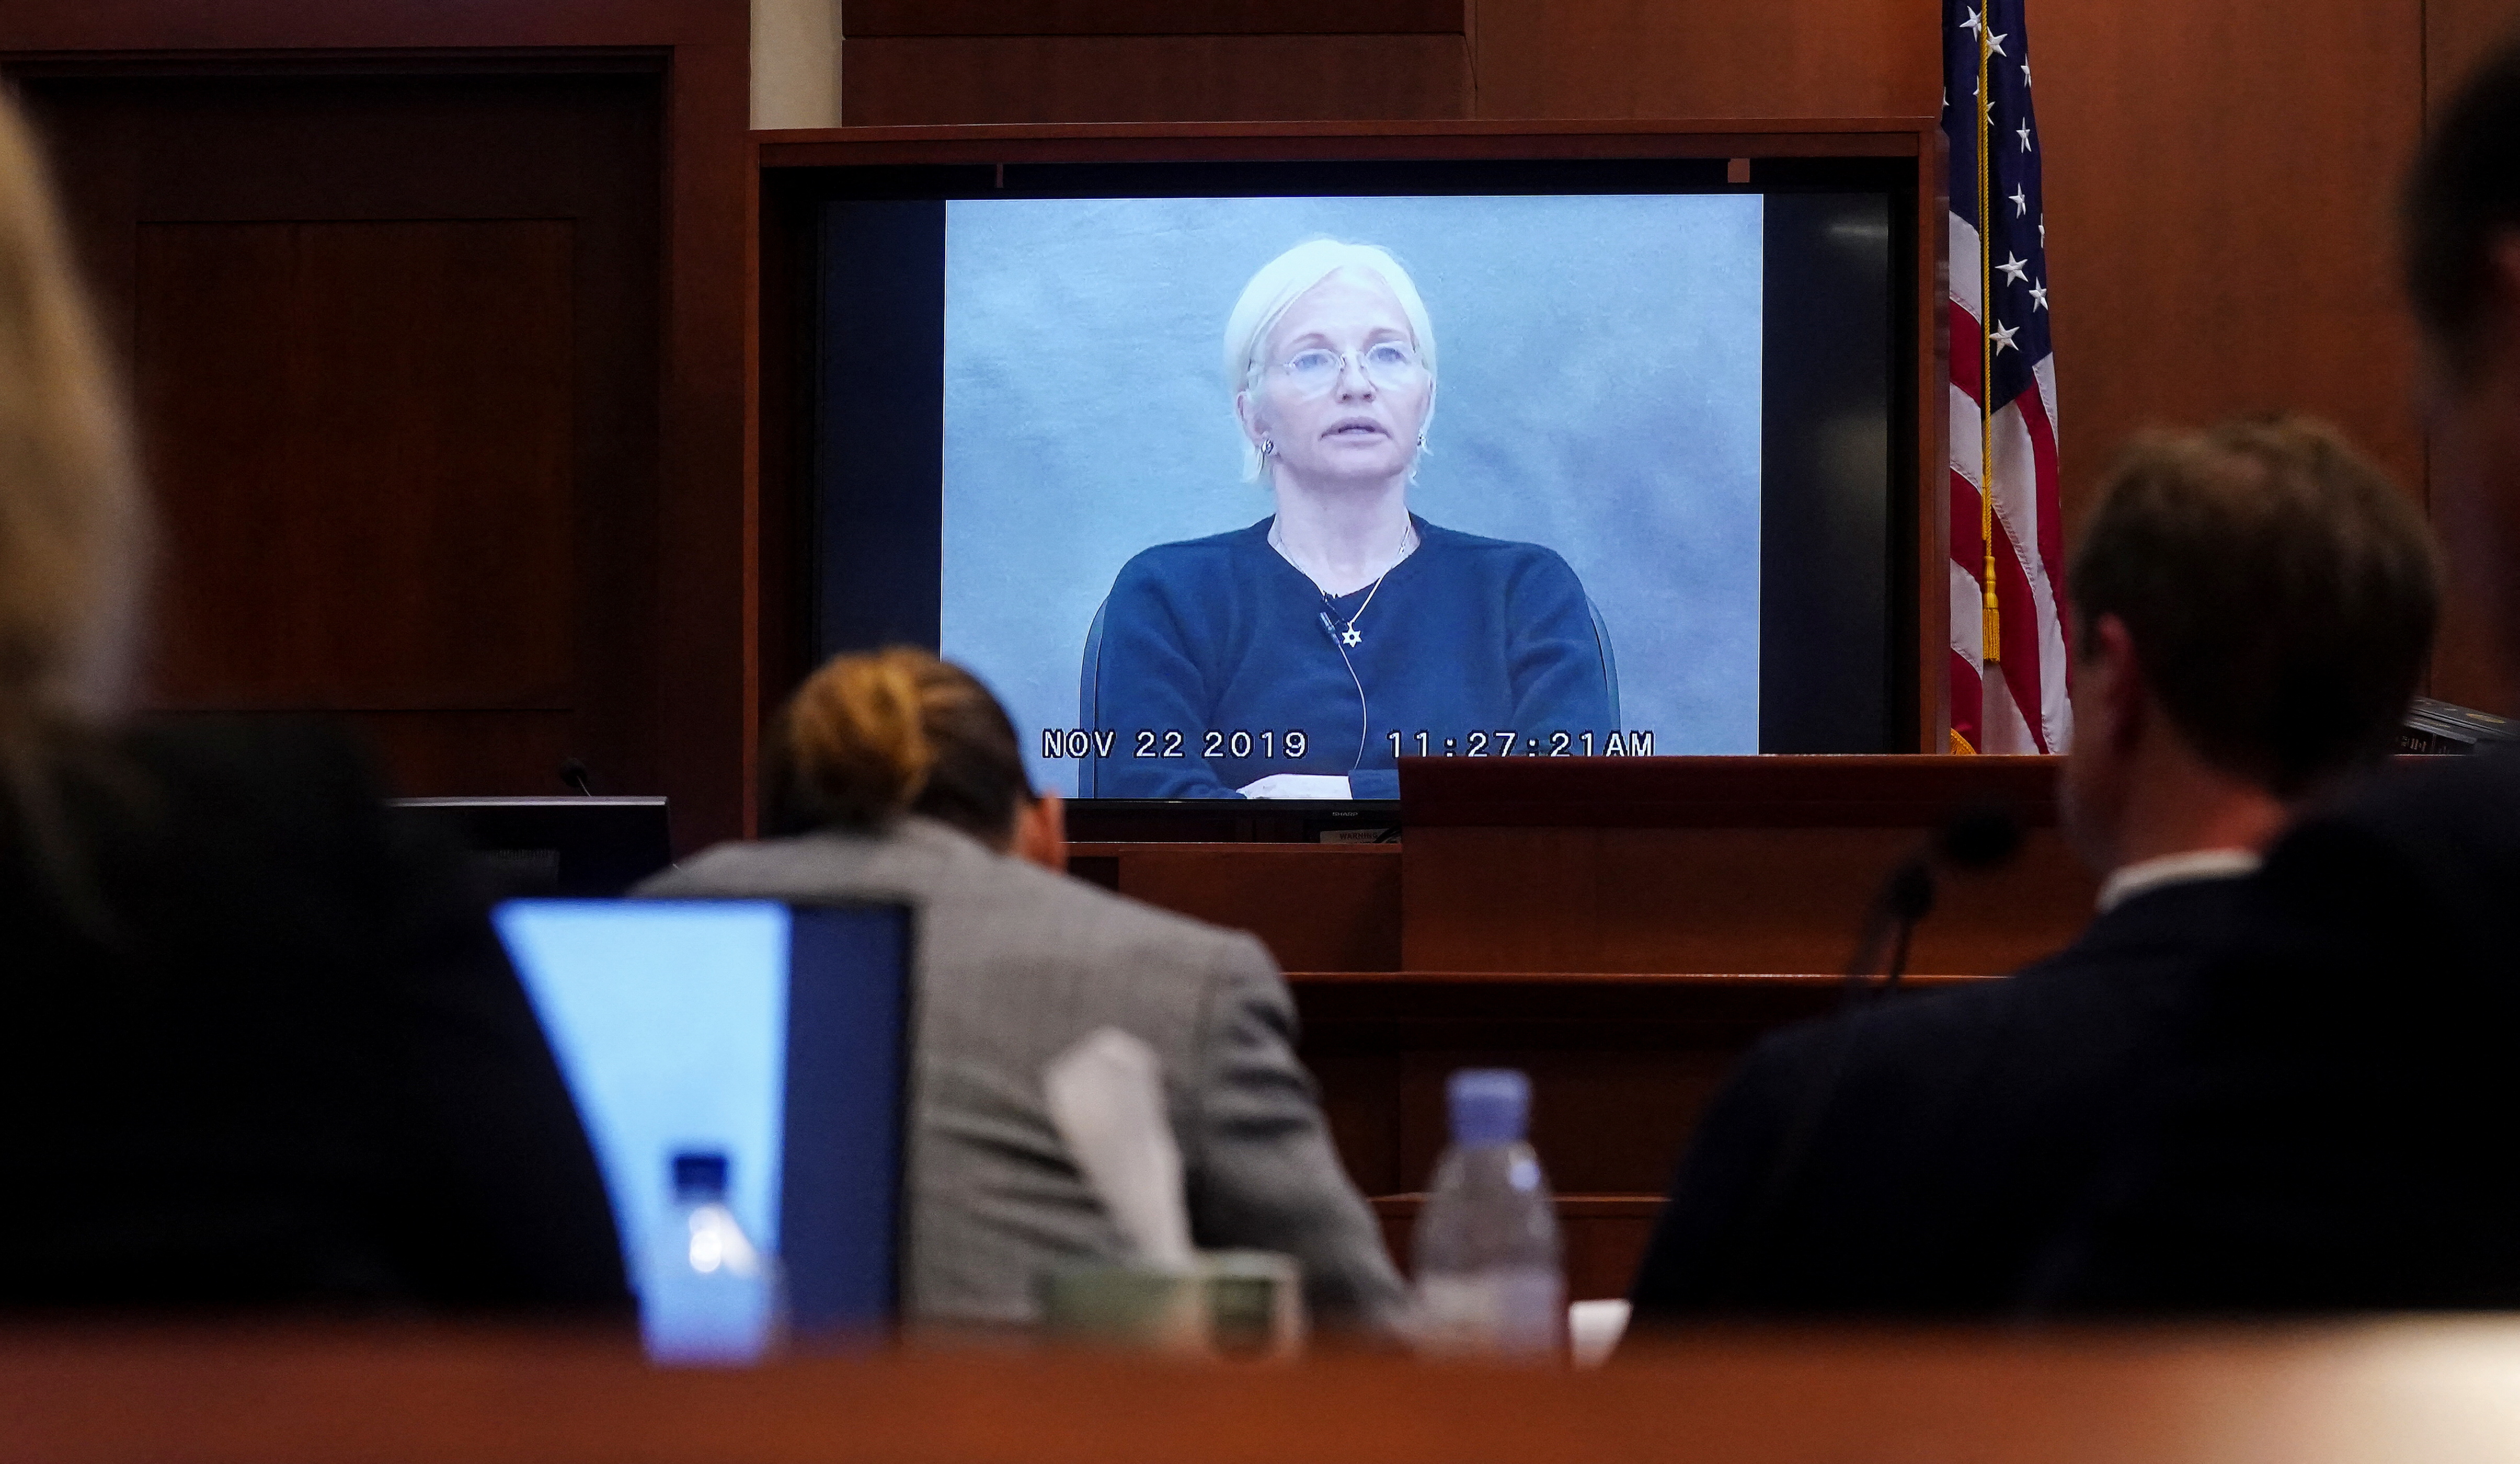 Ellen Barkin aparece en un monitor mientras se reproduce un testimonio grabado de 2019 durante el juicio por difamación de Johnny Depp contra su ex esposa, la actriz Amber Heard, en Fairfax, Virginia el 19 de mayo de 2022 (Reuters)